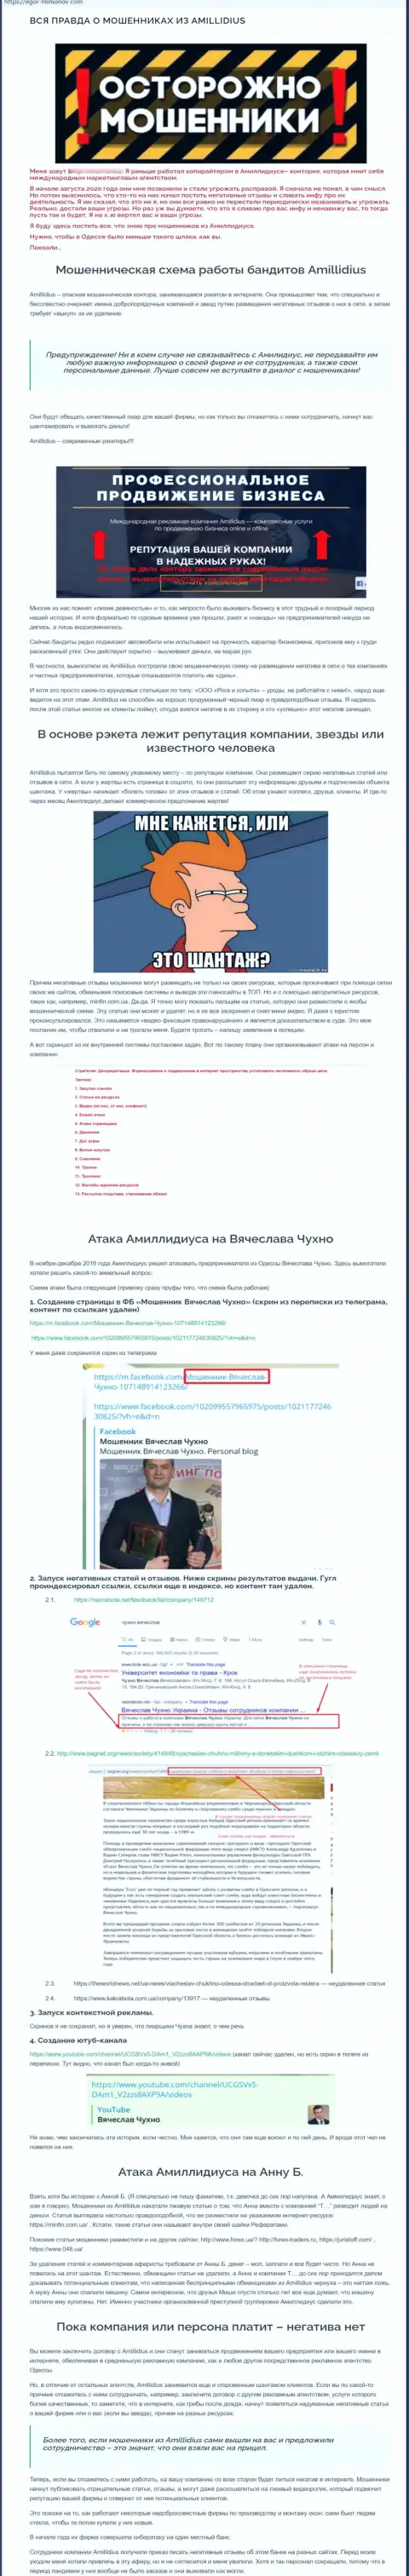 Правдивая информация о махинациях пиар организации Амиллидиус Ком, во главе которой Богдан Терзи